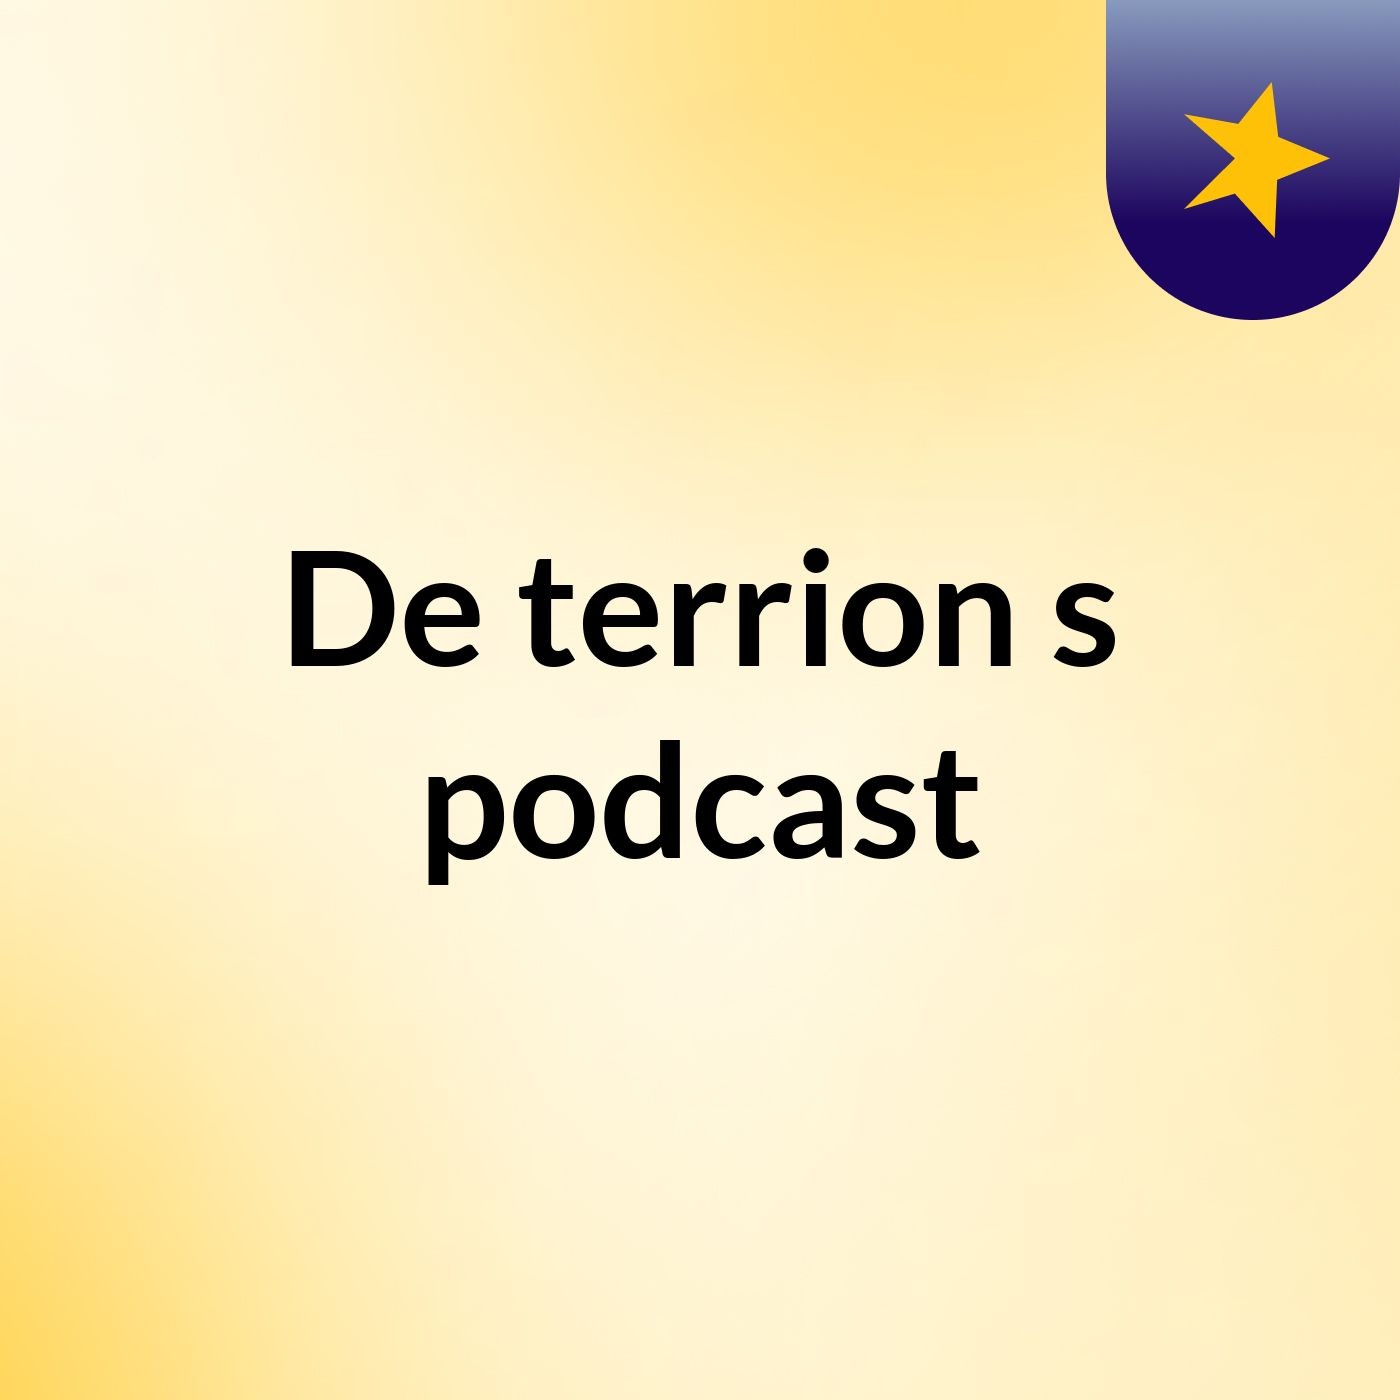 De'terrion's podcast